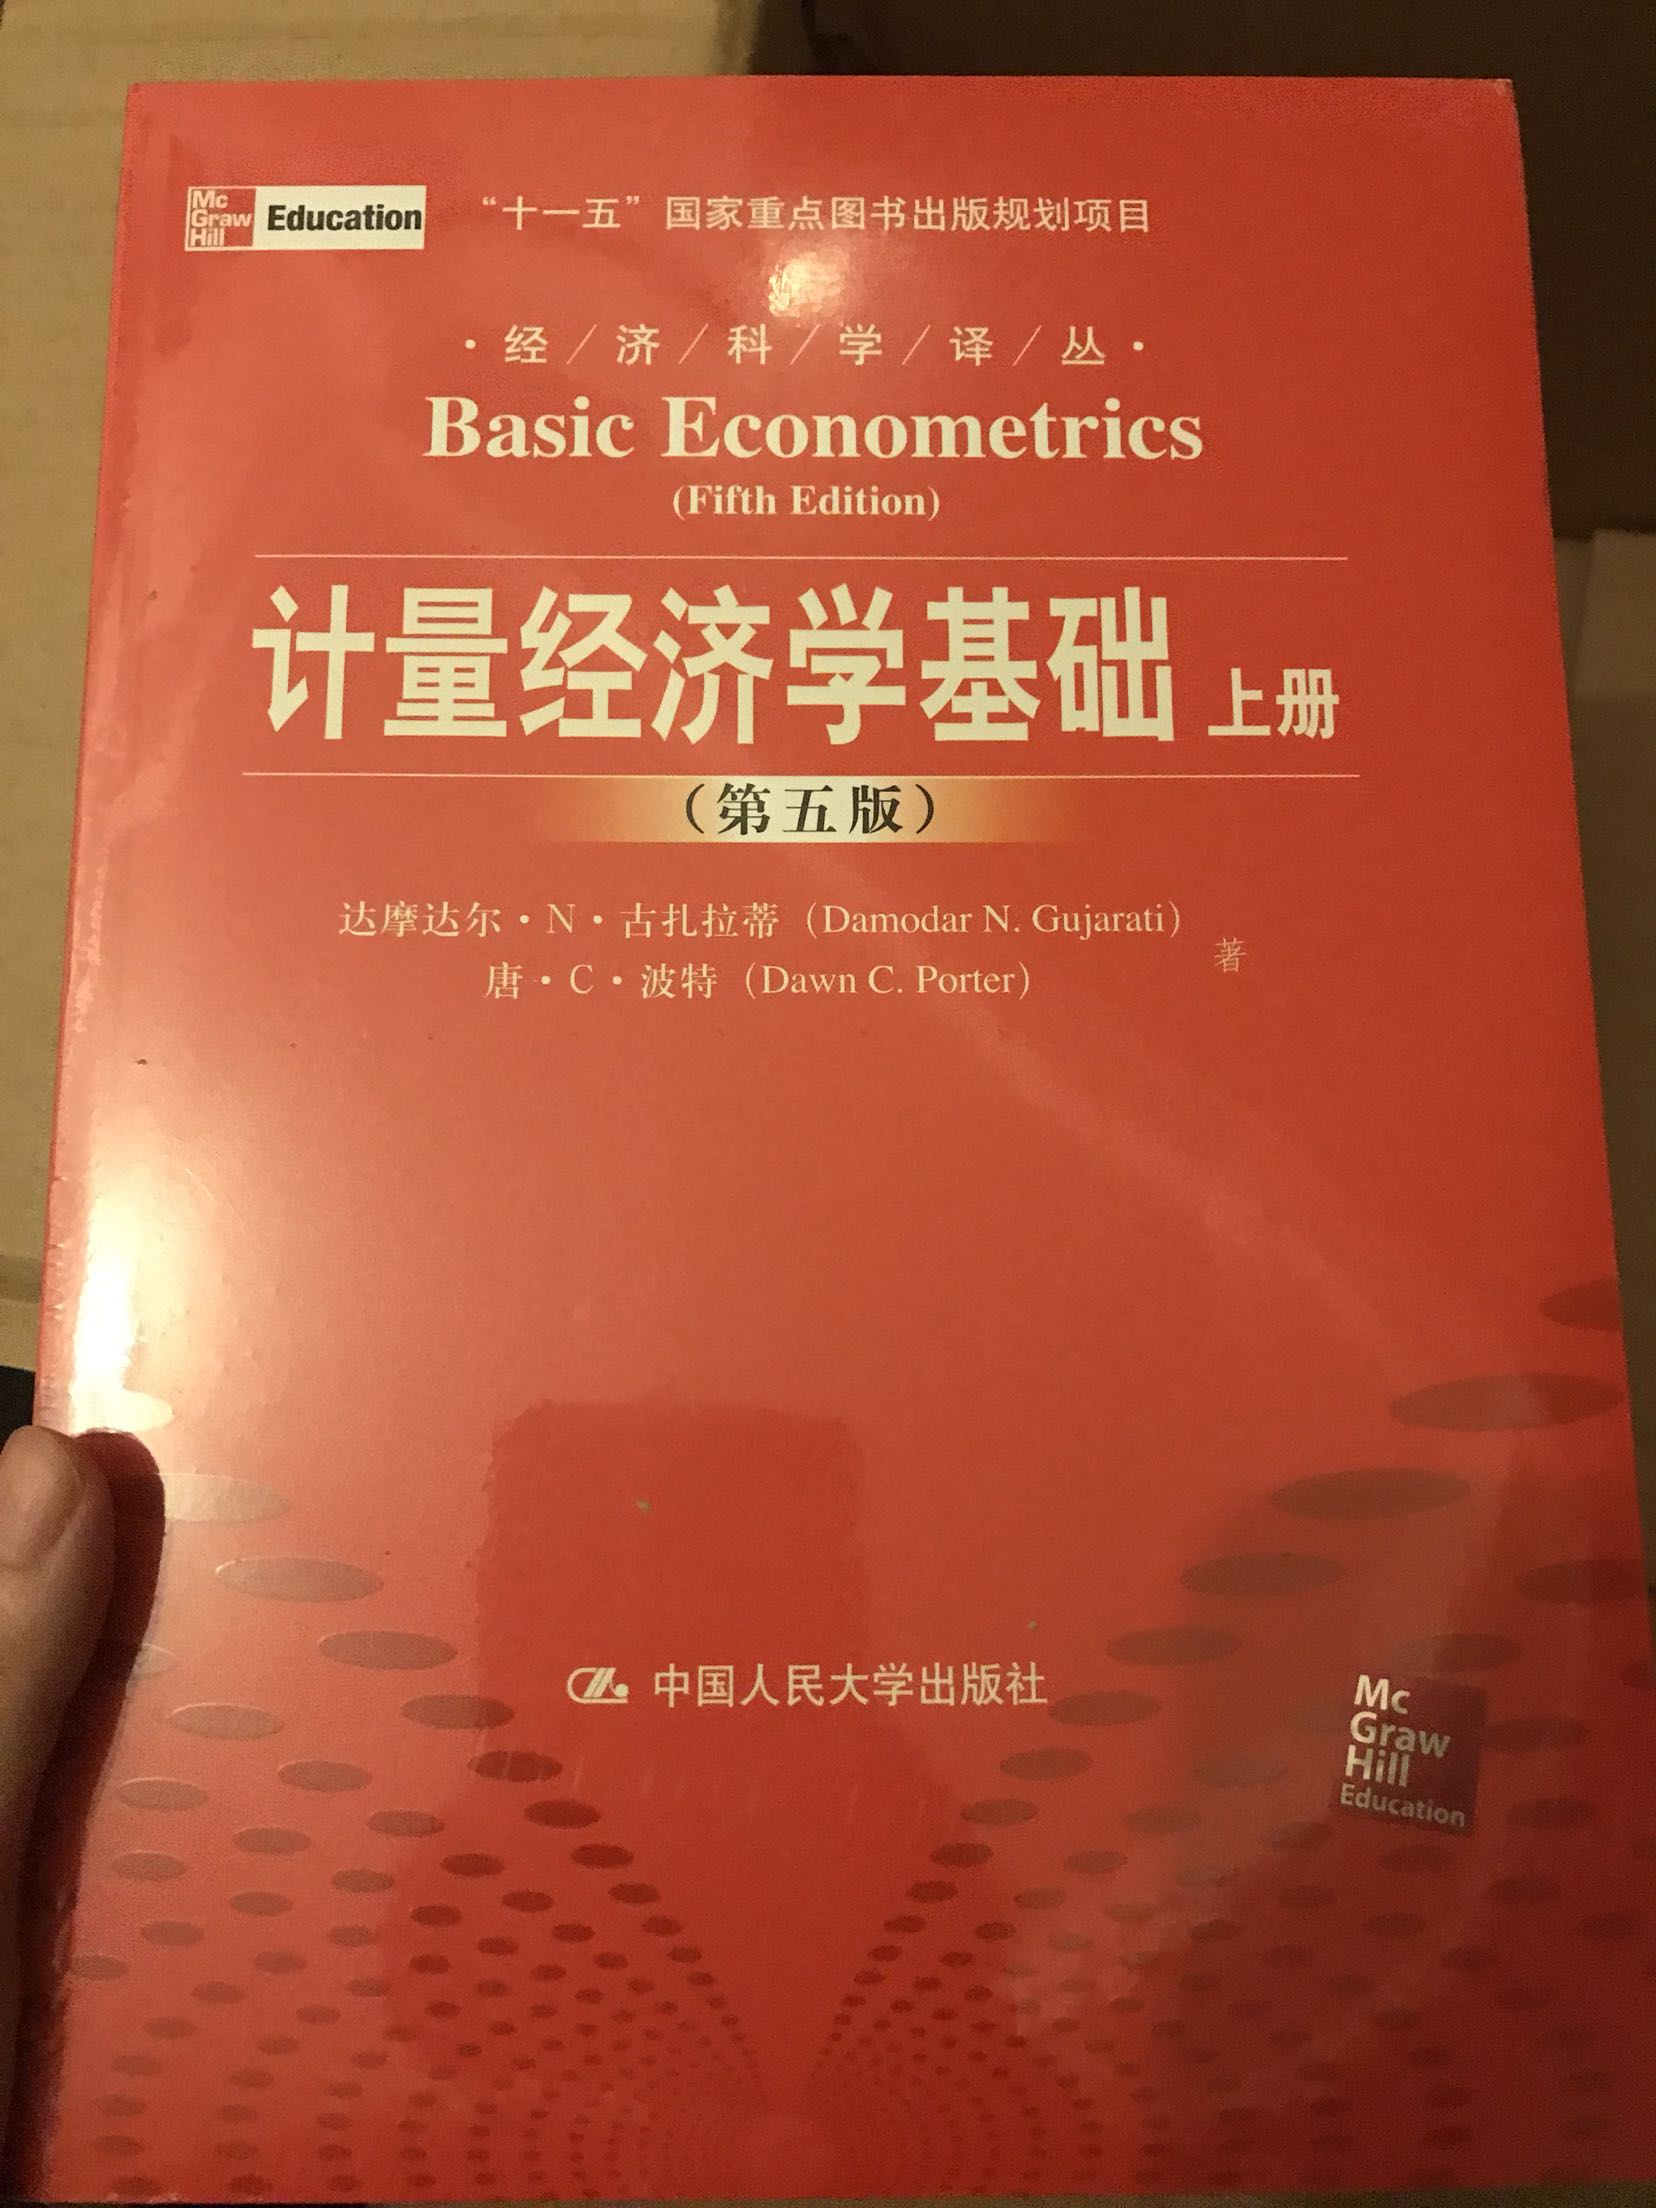 总的来说和统计学方法比较类似，但是结合了经济学相关的例子，因此是计量经济学的书，不过确实比较简单，一直想找一门深入讲解计量经济学的书还没有找到。